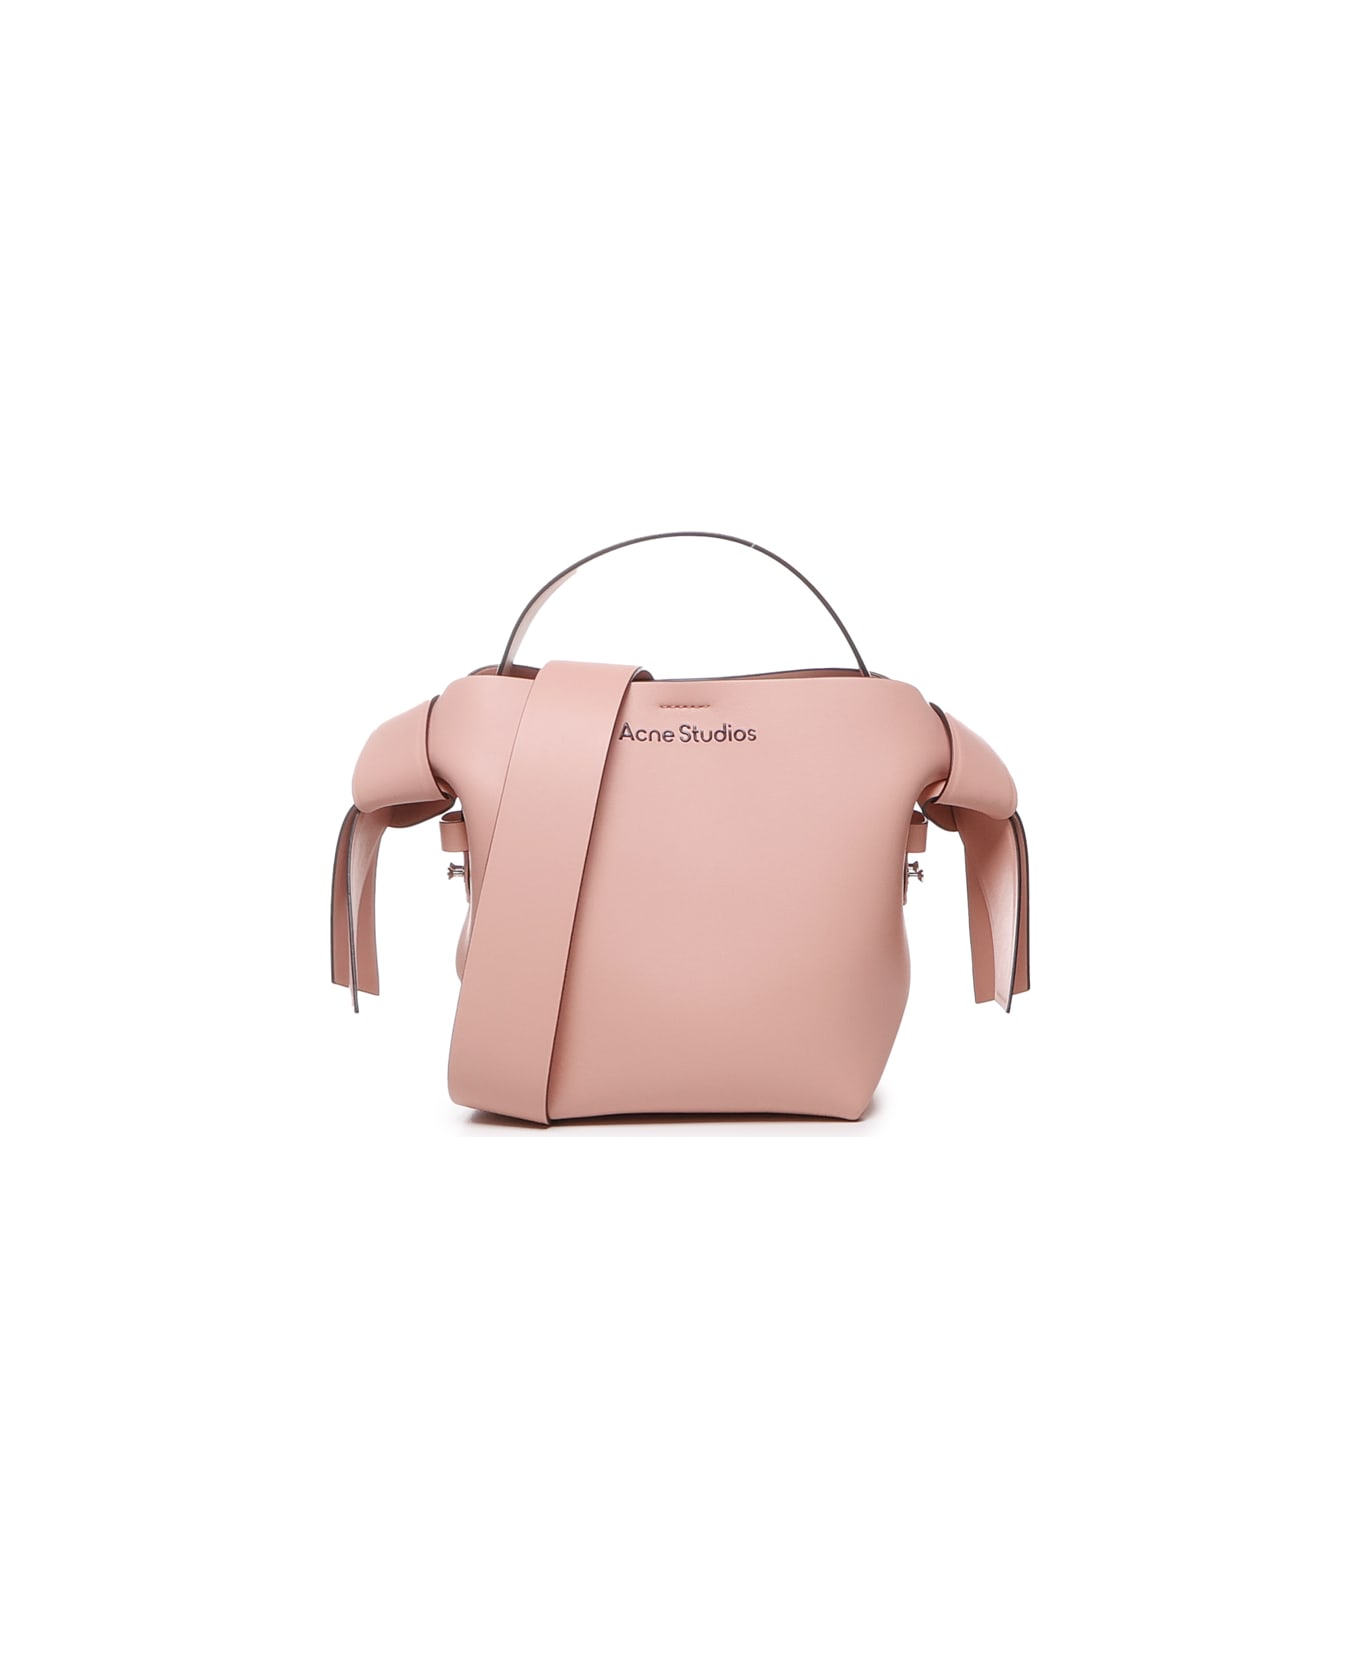 Acne Studios Mini Musubi Bag In Calfskin - Salmon pink